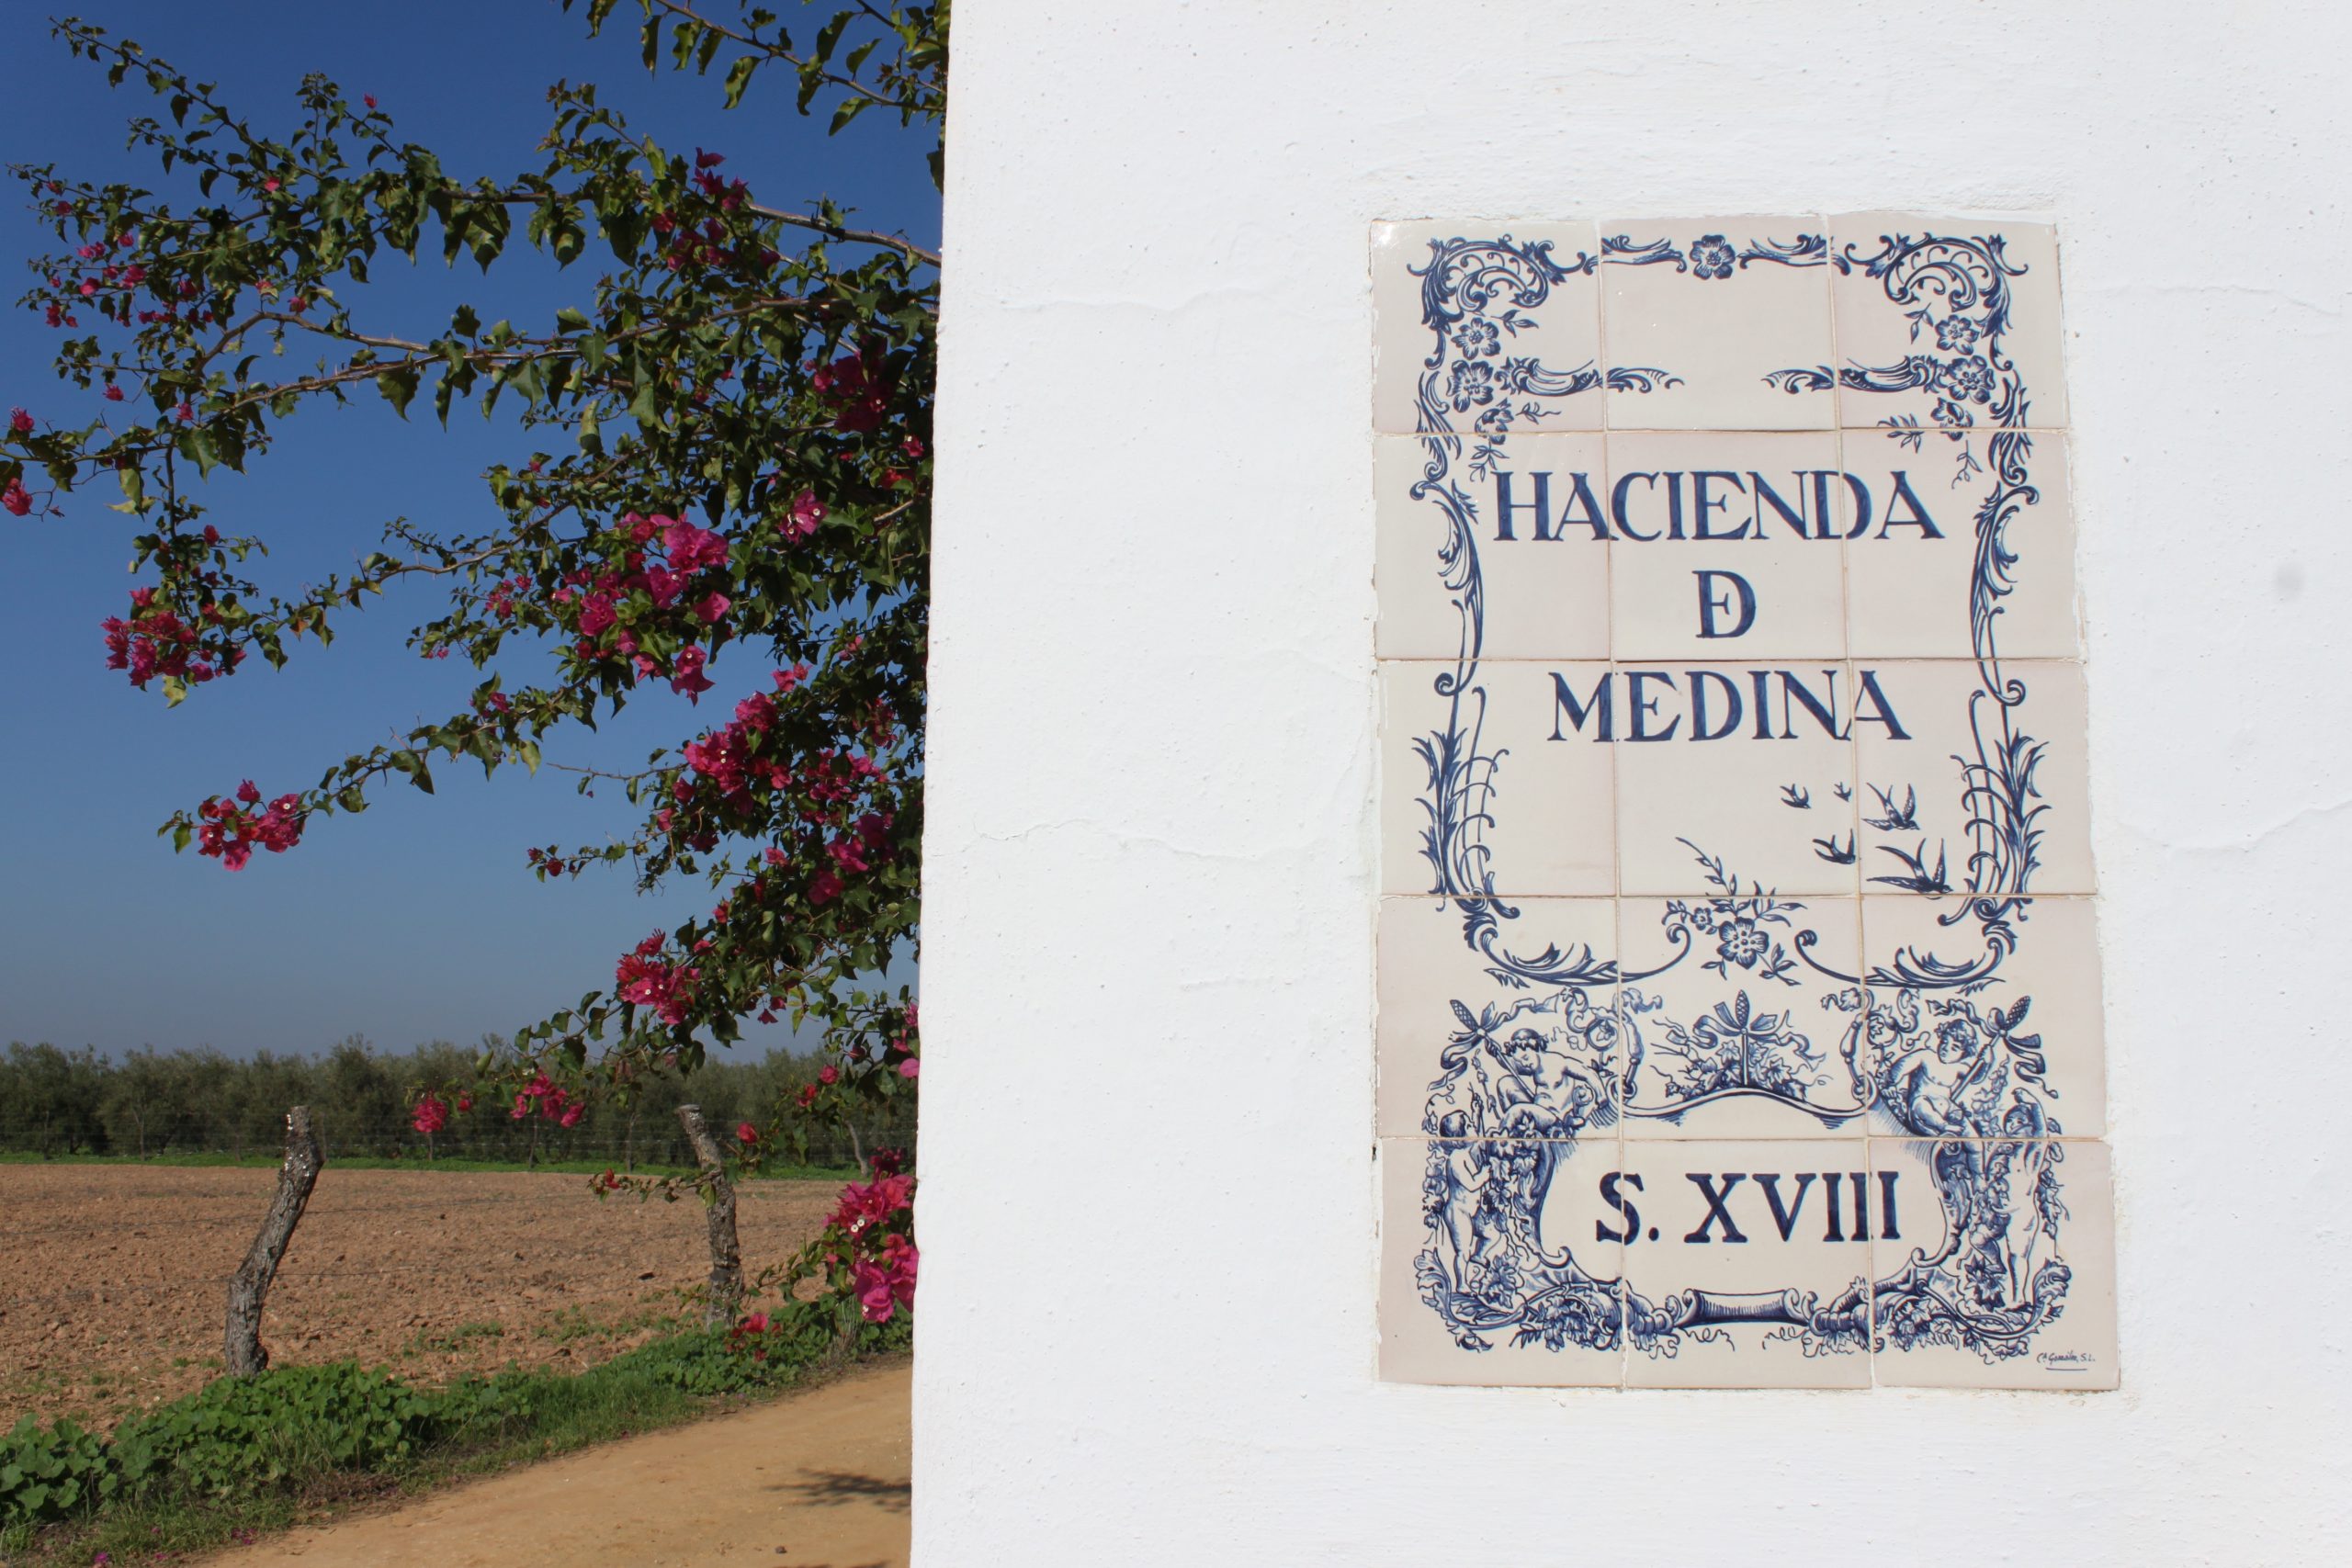 Hacienda de bodas en Sevilla, Hacienda de Medina, el lugar perfecto para la celebración de bodas o bodas civiles en Sevilla.